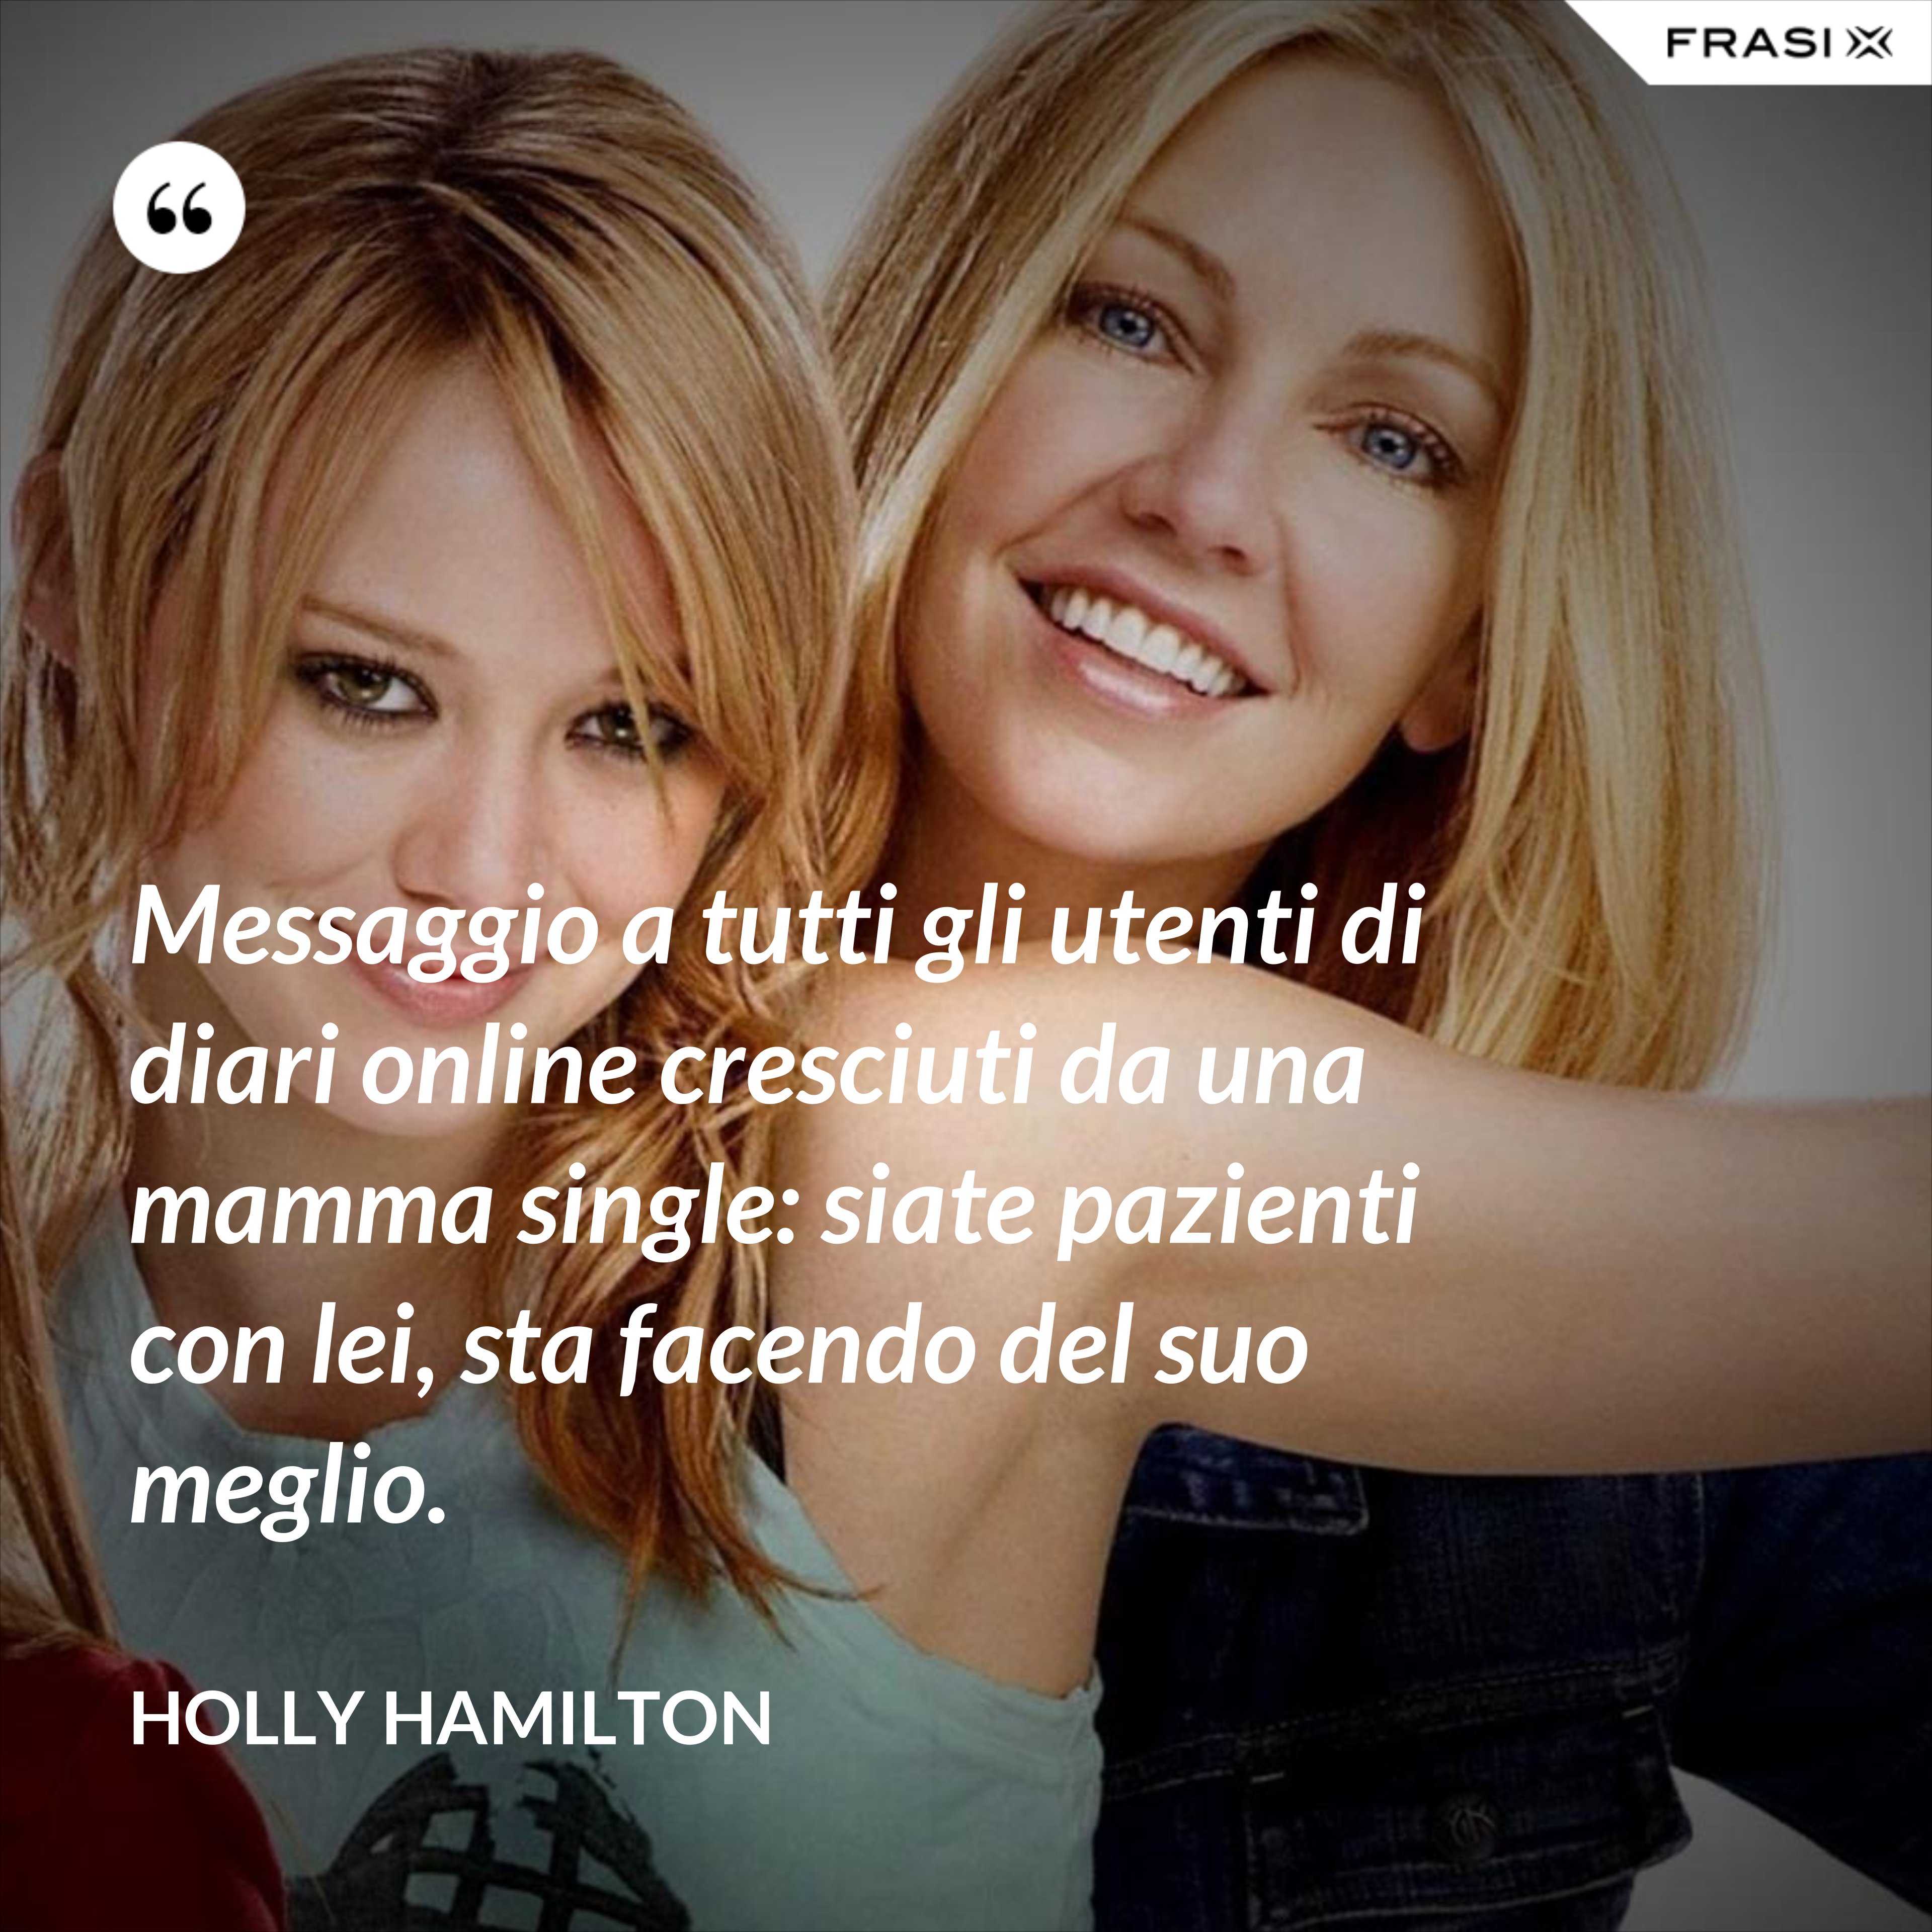 Messaggio a tutti gli utenti di diari online cresciuti da una mamma single: siate pazienti con lei, sta facendo del suo meglio. - Holly Hamilton